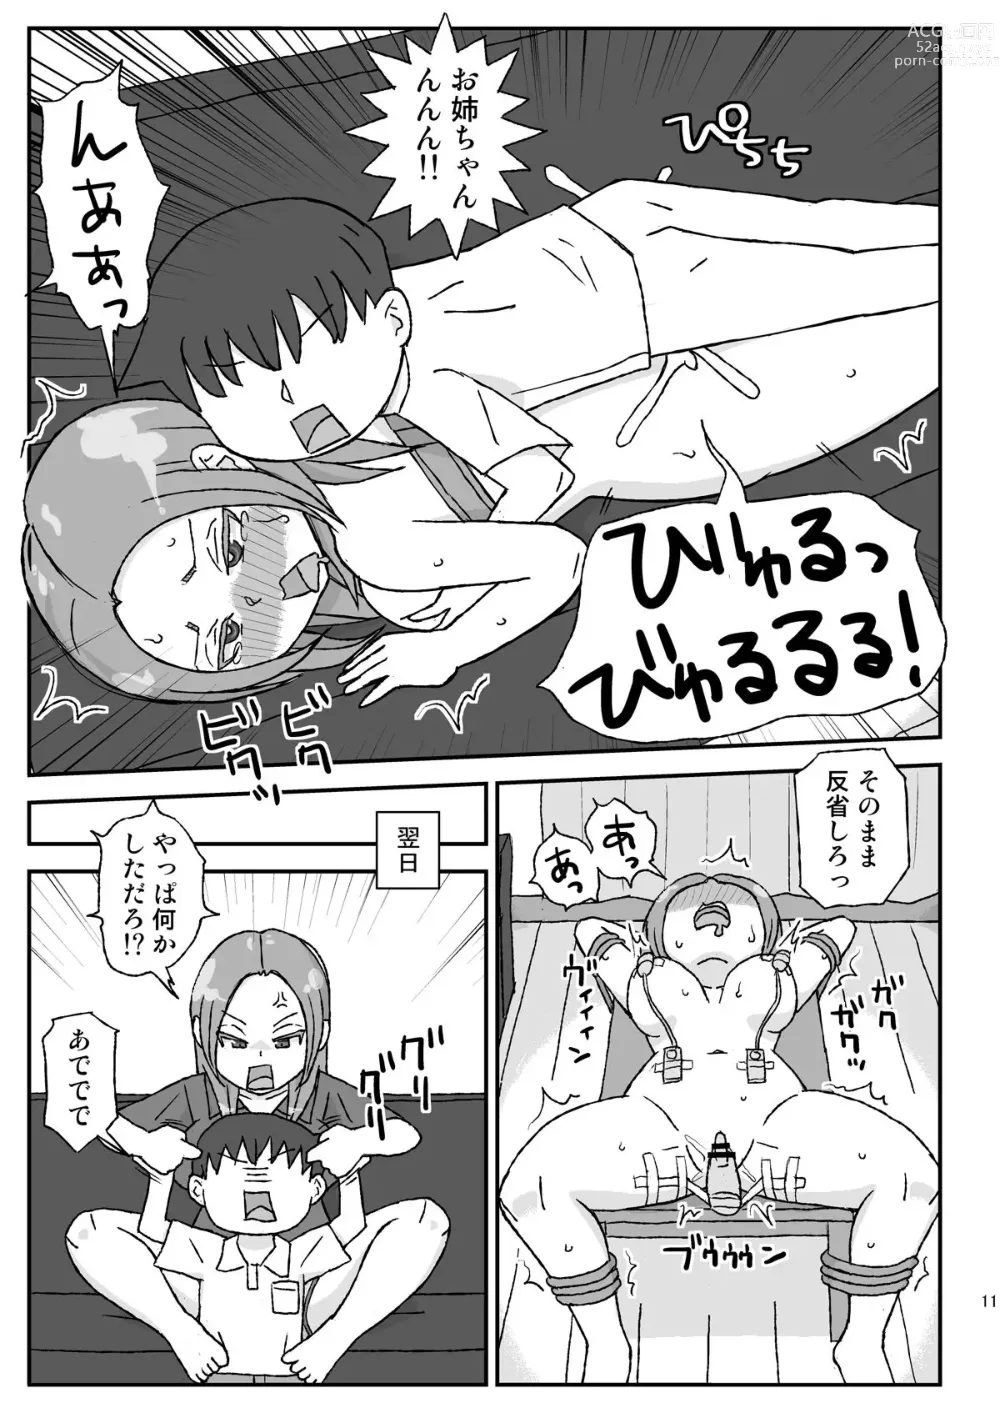 Page 11 of doujinshi Yotta Onee-chan wa Nani o Sarete mo Kiokuninai